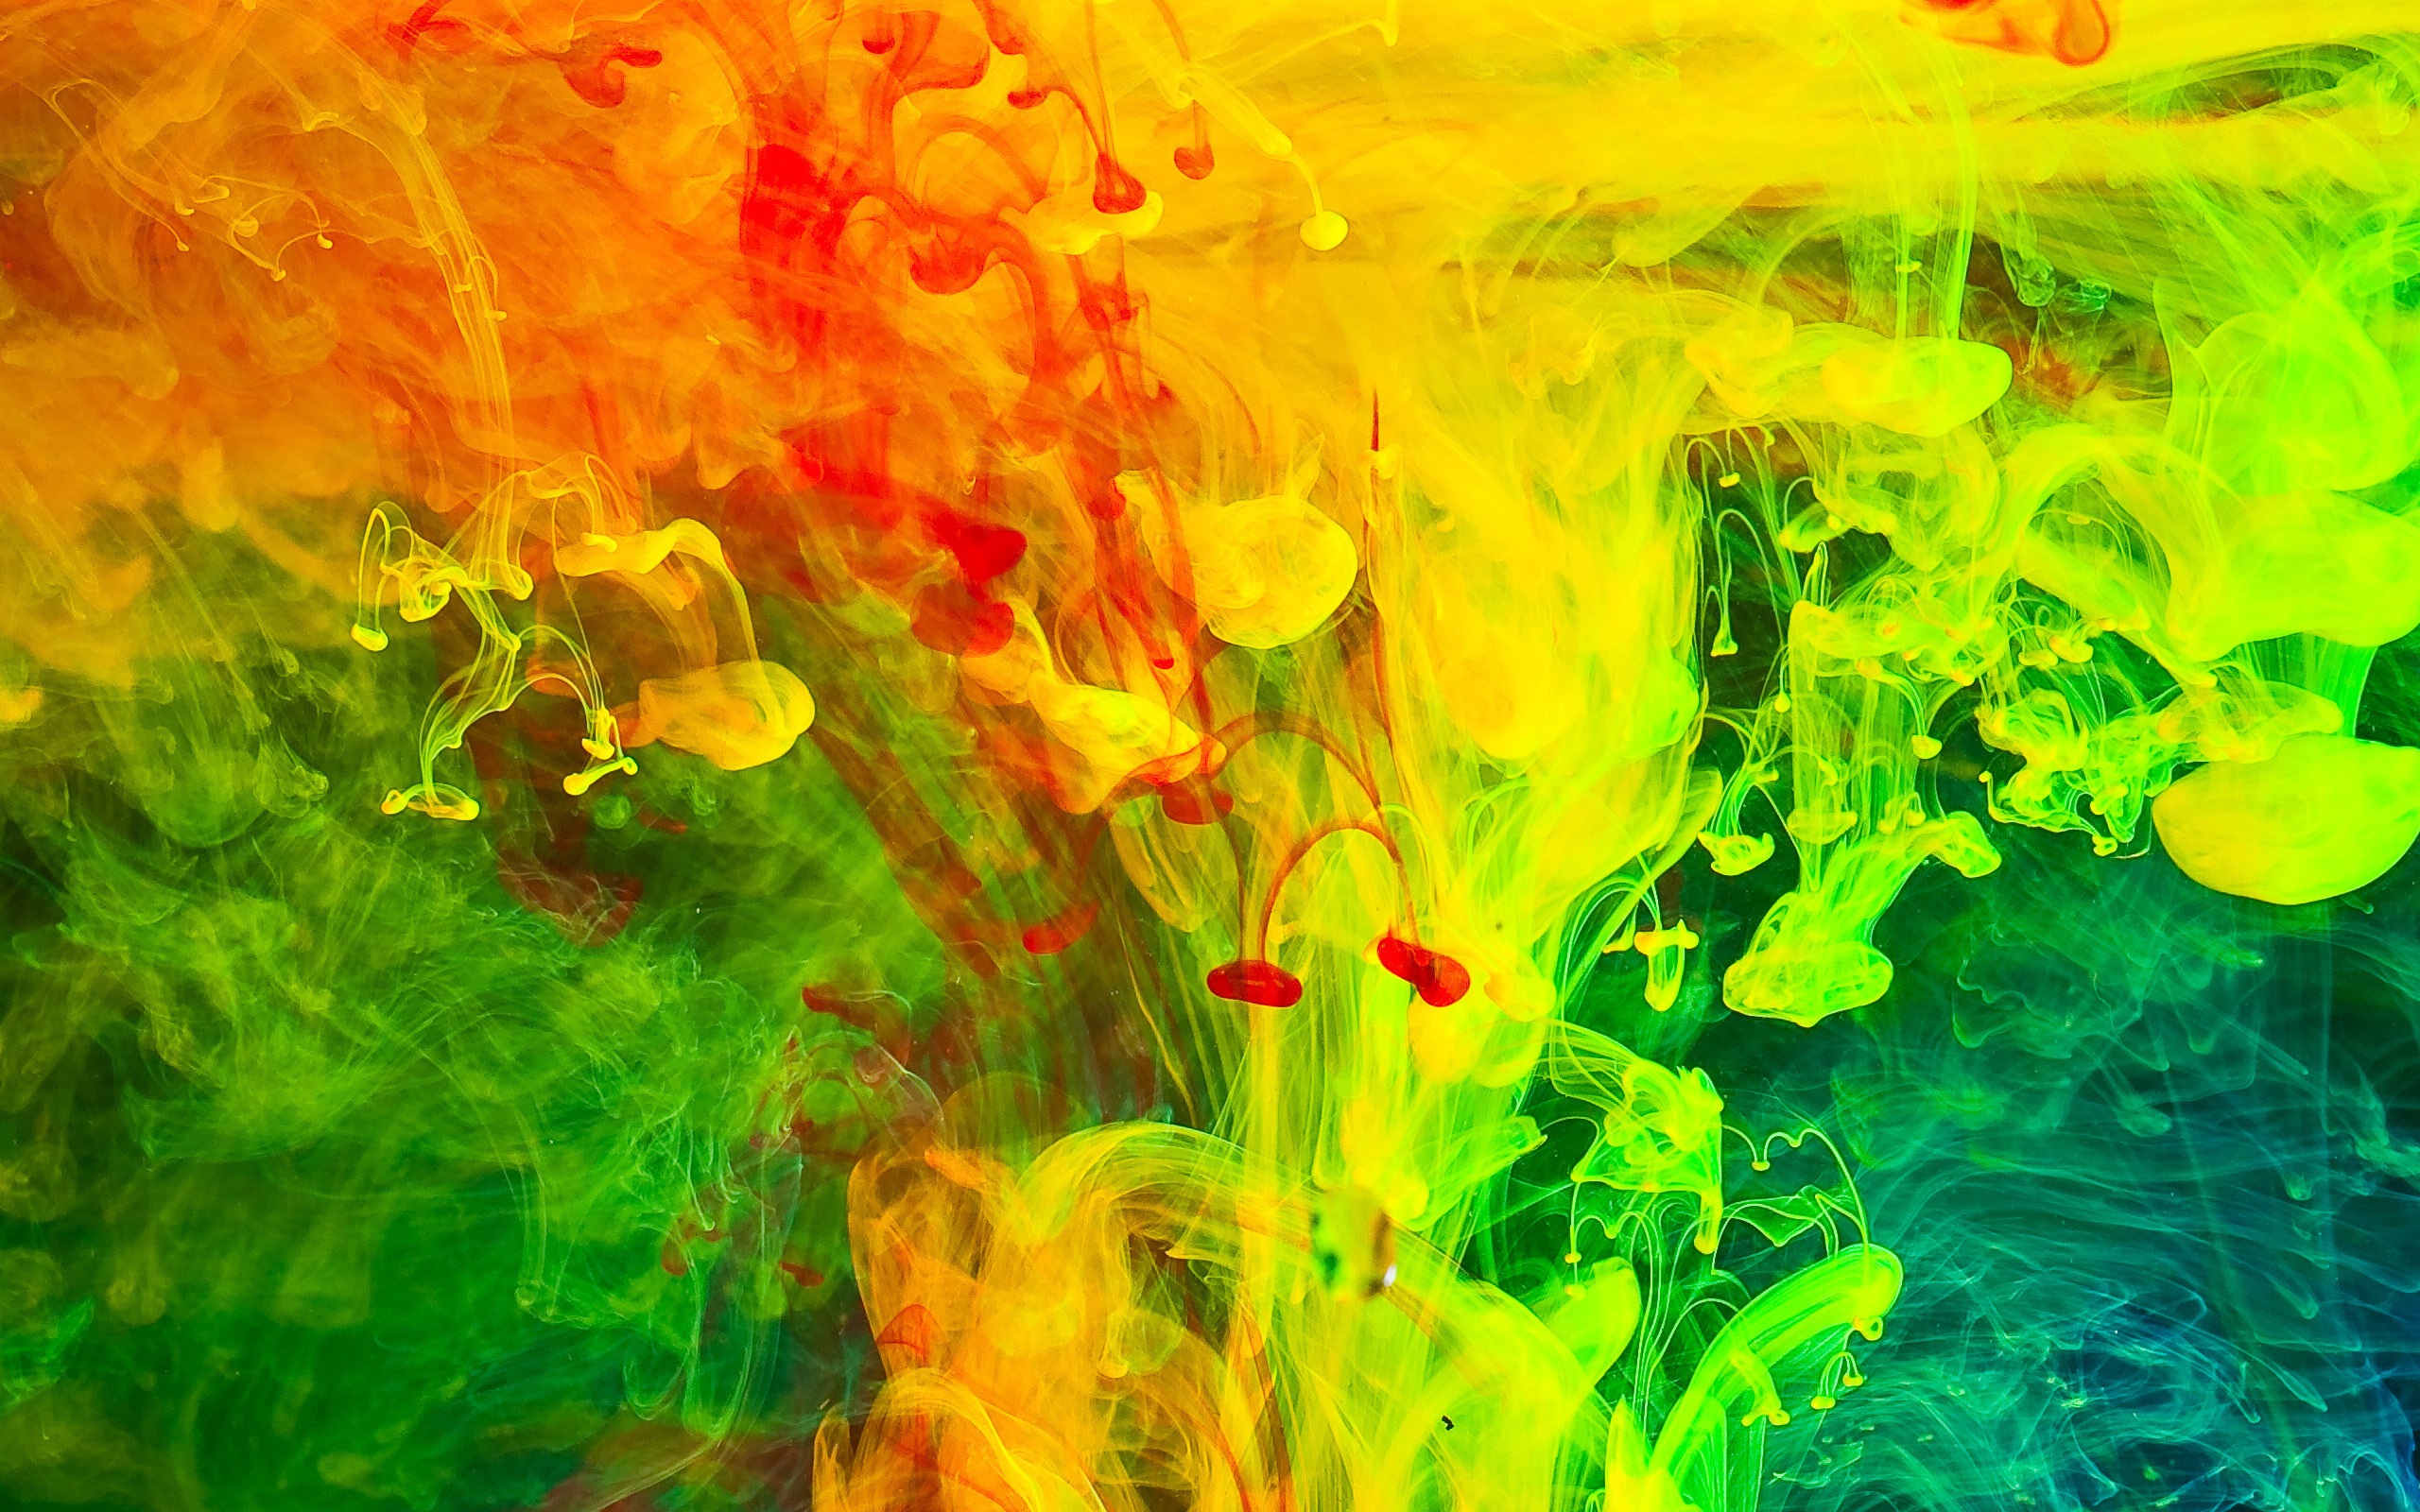 Colorful Paint Fumes Art By JennyMari  